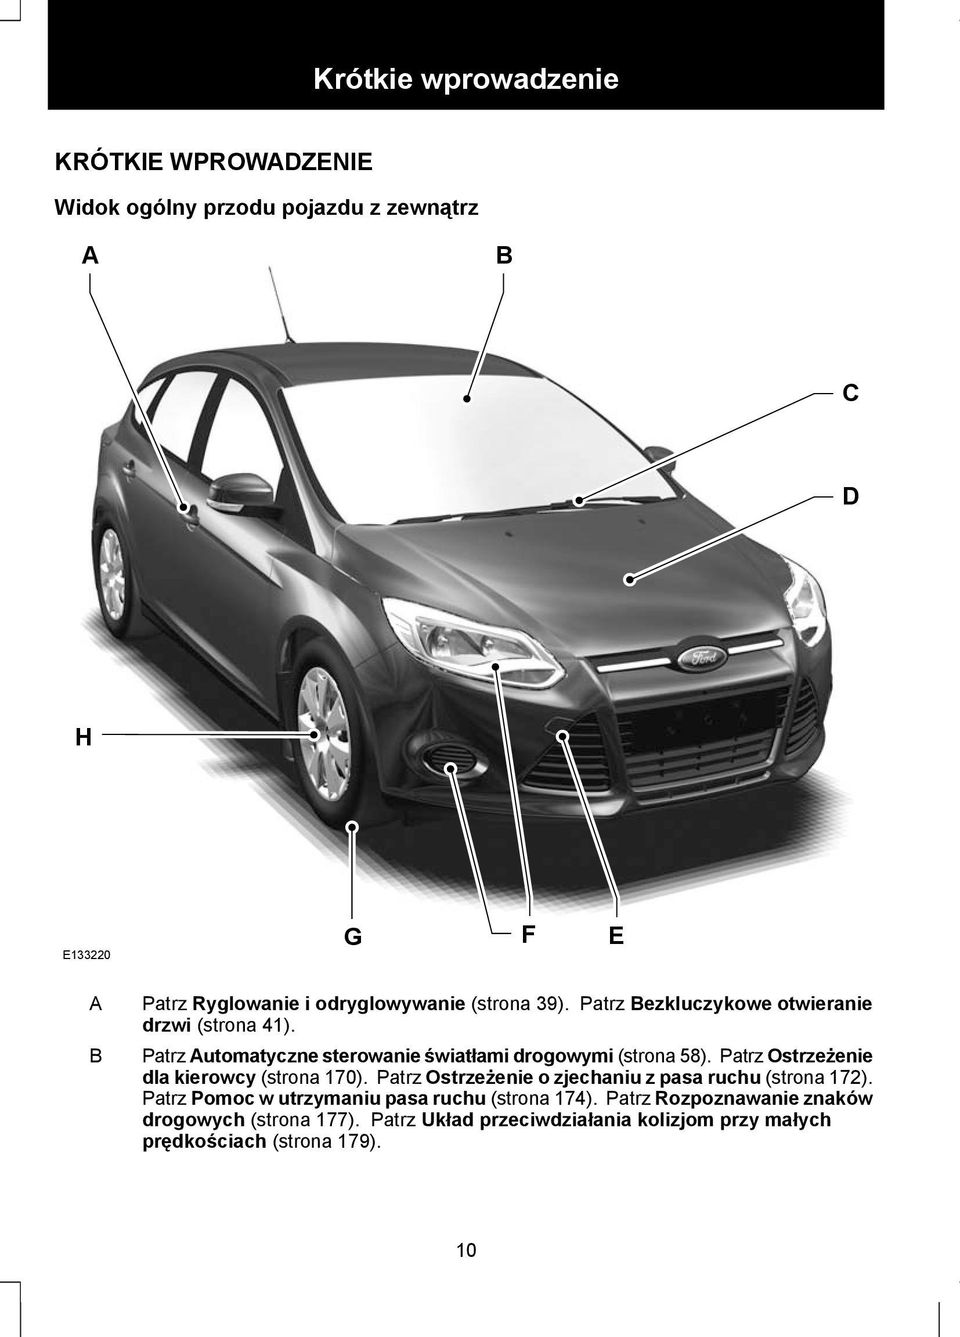 Patrz Automatyczne sterowanie światłami drogowymi (strona 58). Patrz Ostrzeżenie dla kierowcy (strona 170).